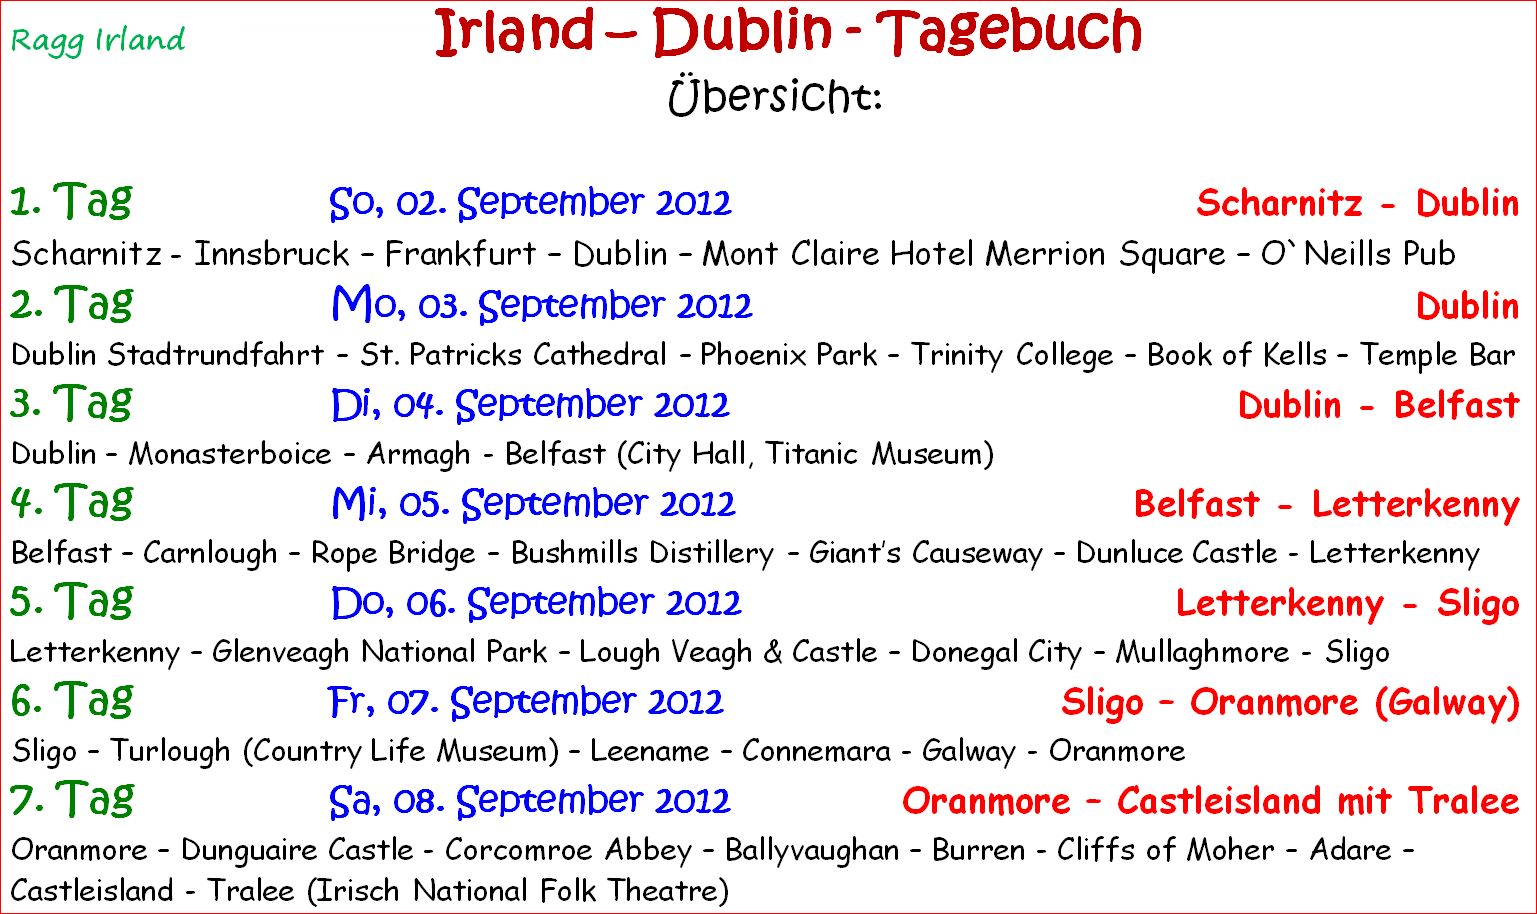 ragg 2012-09-02 -- 09-11 - web - Irland - Seite 02 Übersicht - Text - Bild 01 - A